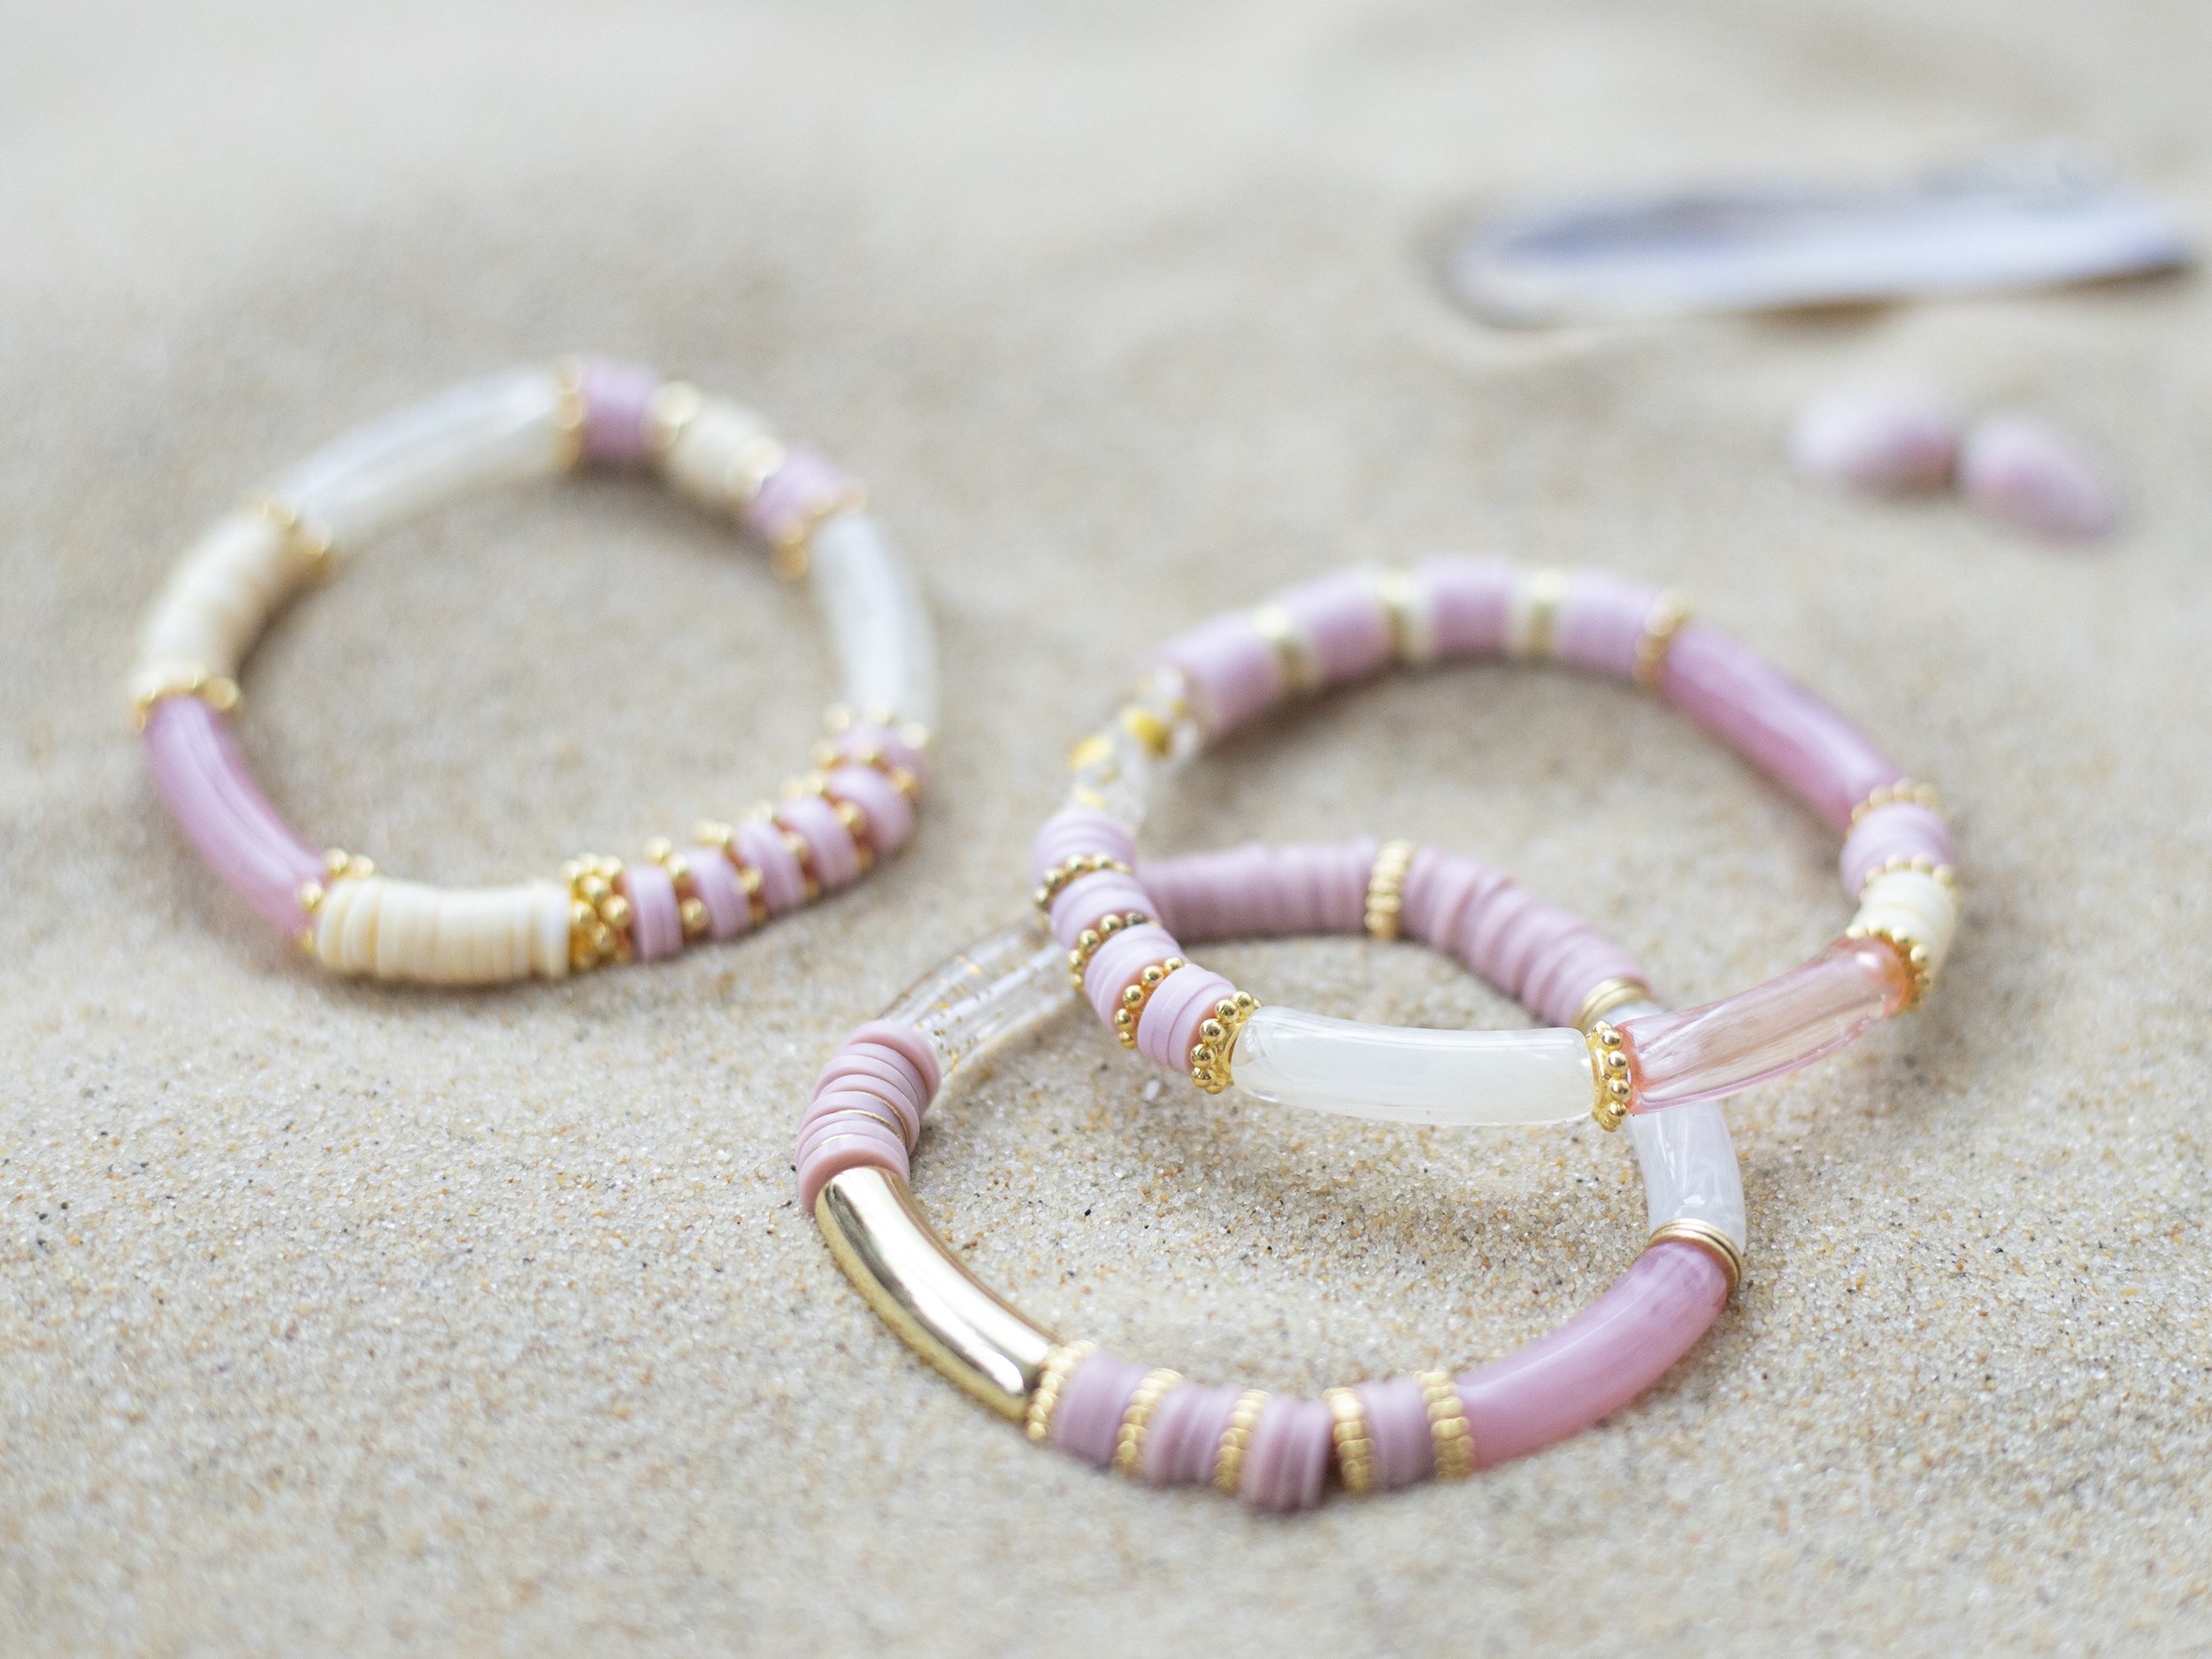 Tuto DIY : Colliers et Bracelets élastiques - Perles & Co